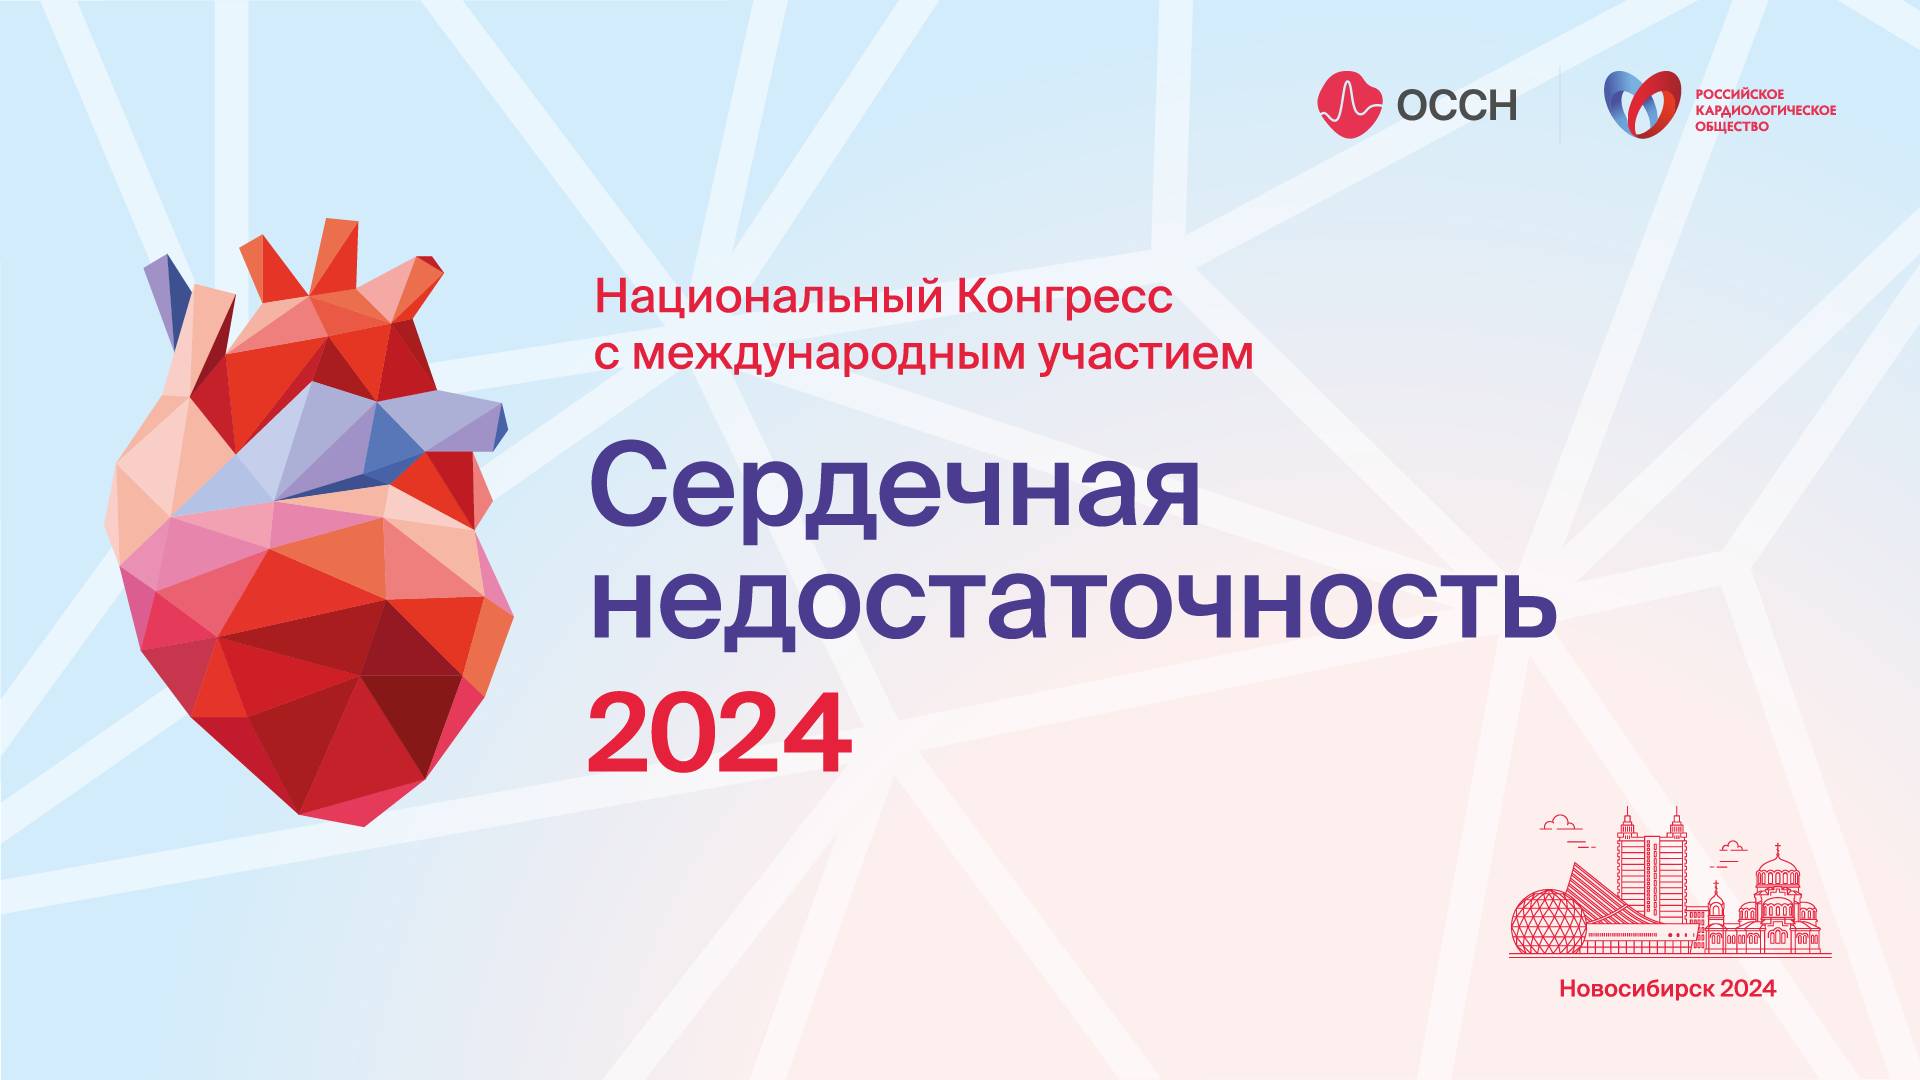 Конгресс СФО с международным участием "Сердечная недостаточность 2024" Зал Conrad